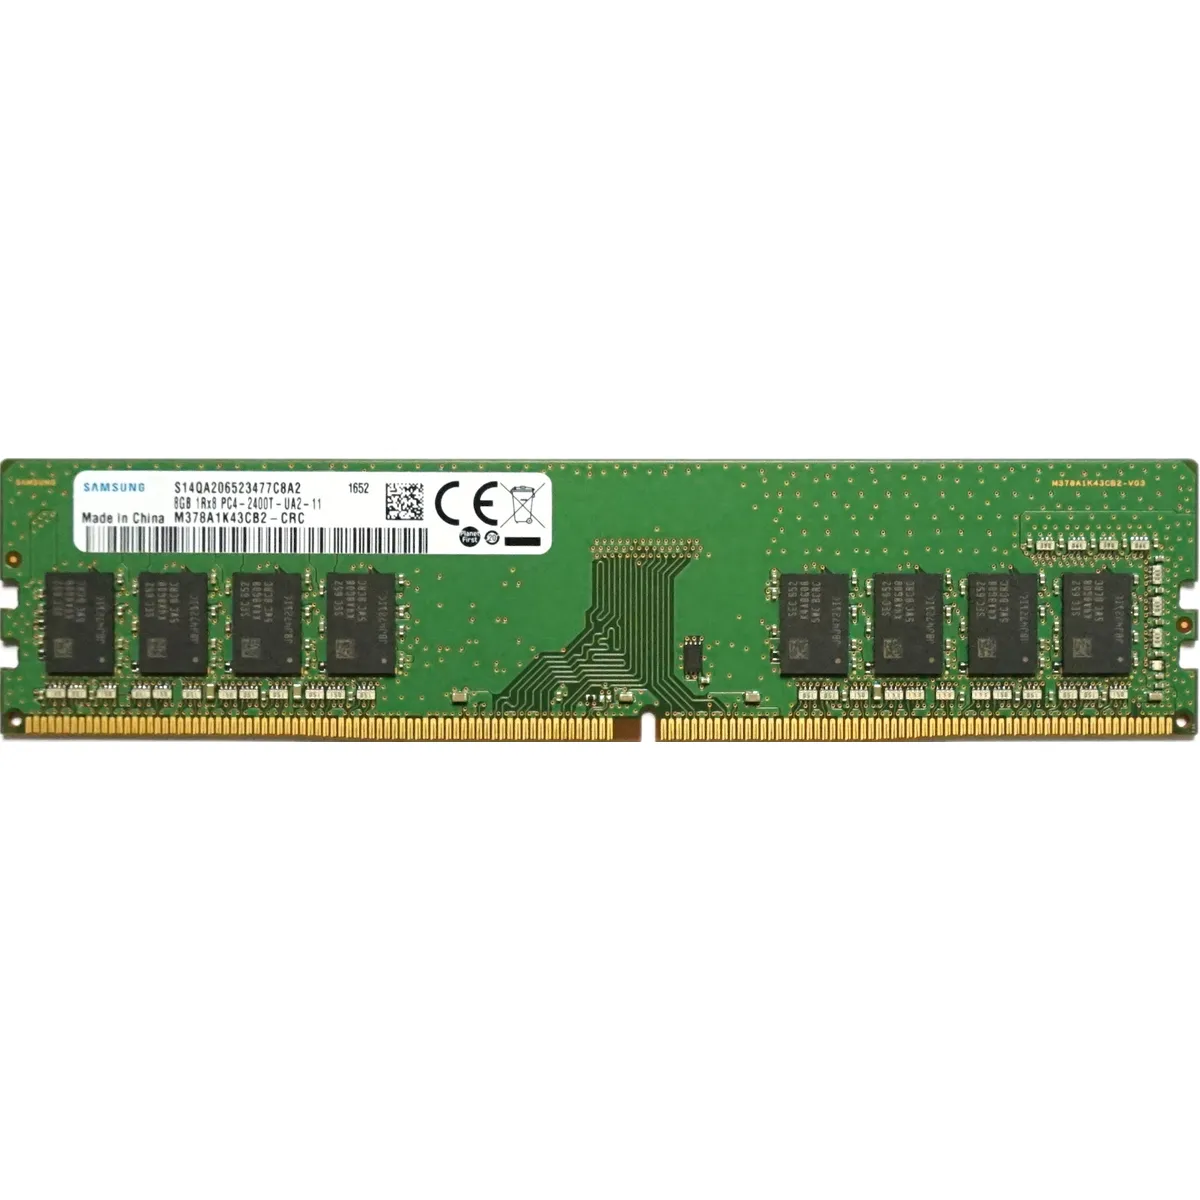 Unbranded - 8GB PC4-19200T-U (DDR4-2400Mhz, 1RX8)